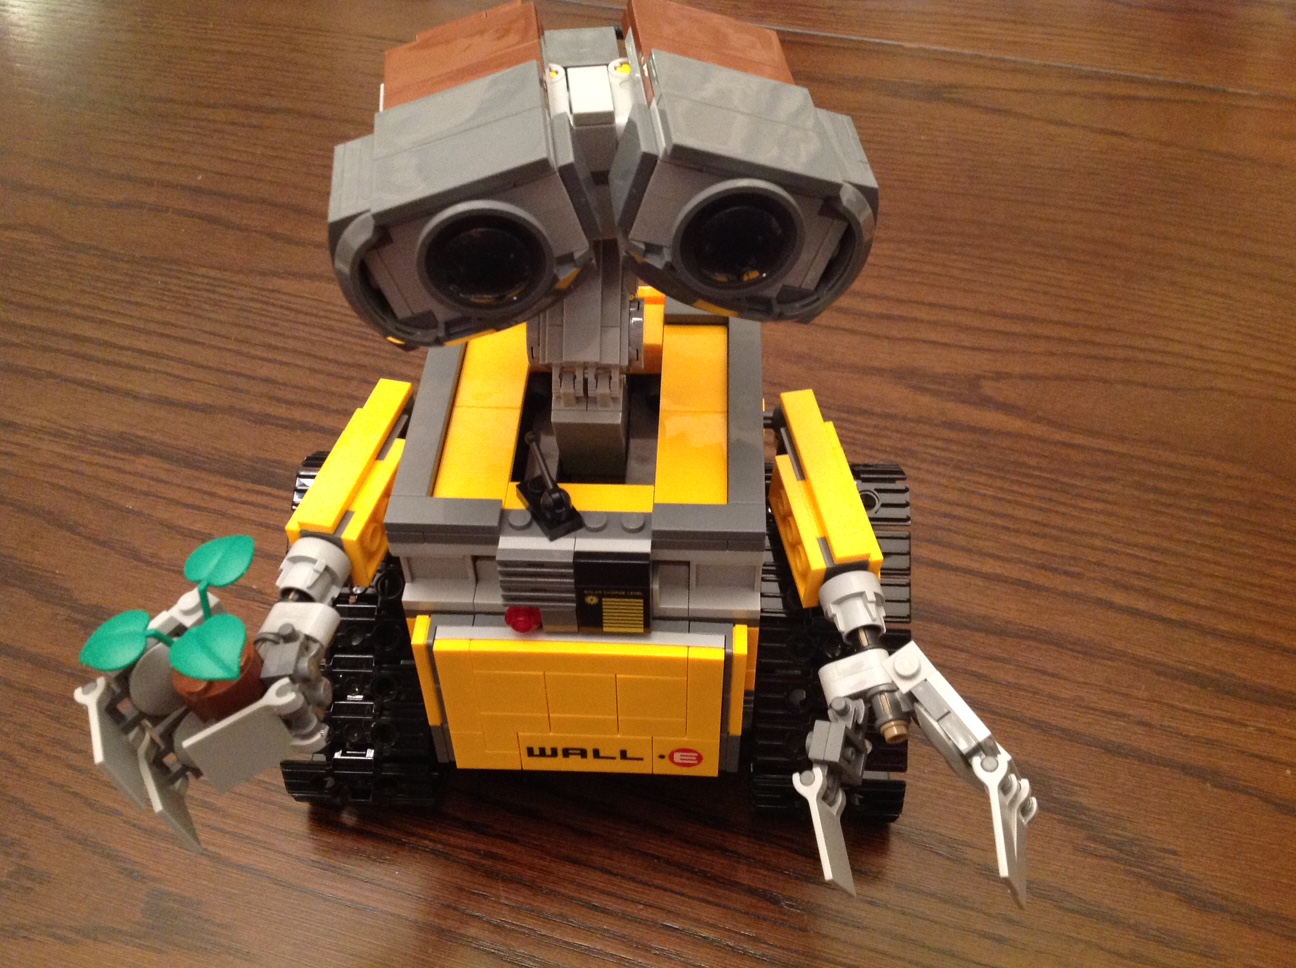 LEGO 21303 WALL•E review